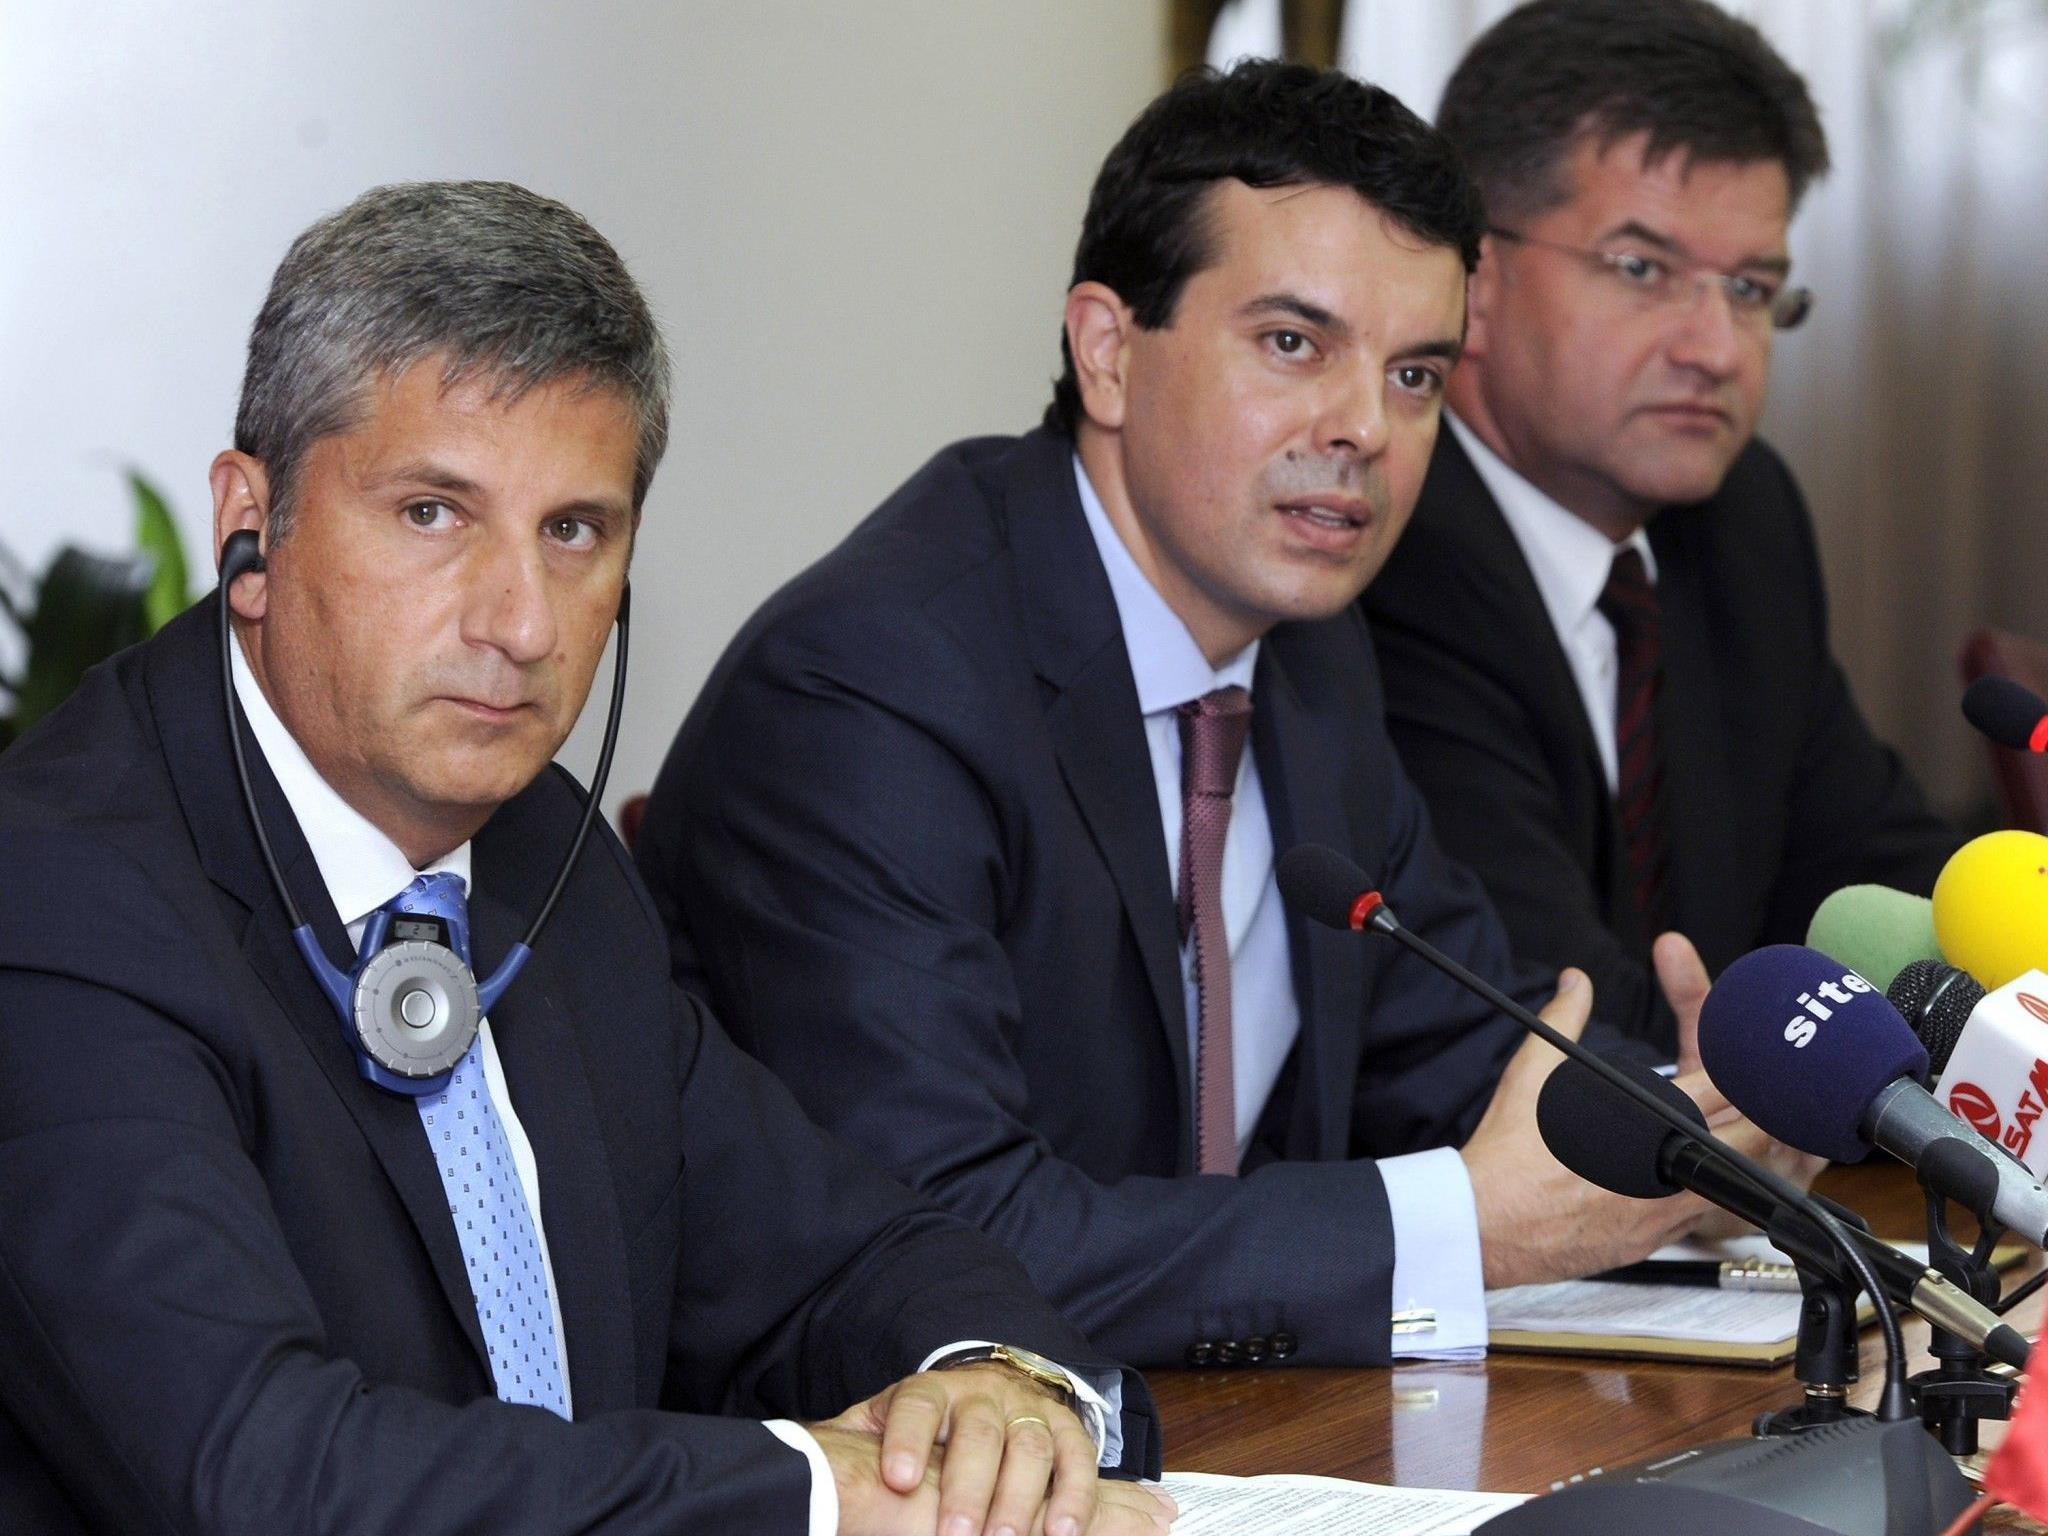 Außenminister Michael Spindelegger mit seinen Amtskollegen Nikola Poposki (Mazedonien) und Miroslav Lajcak (Slowakei)